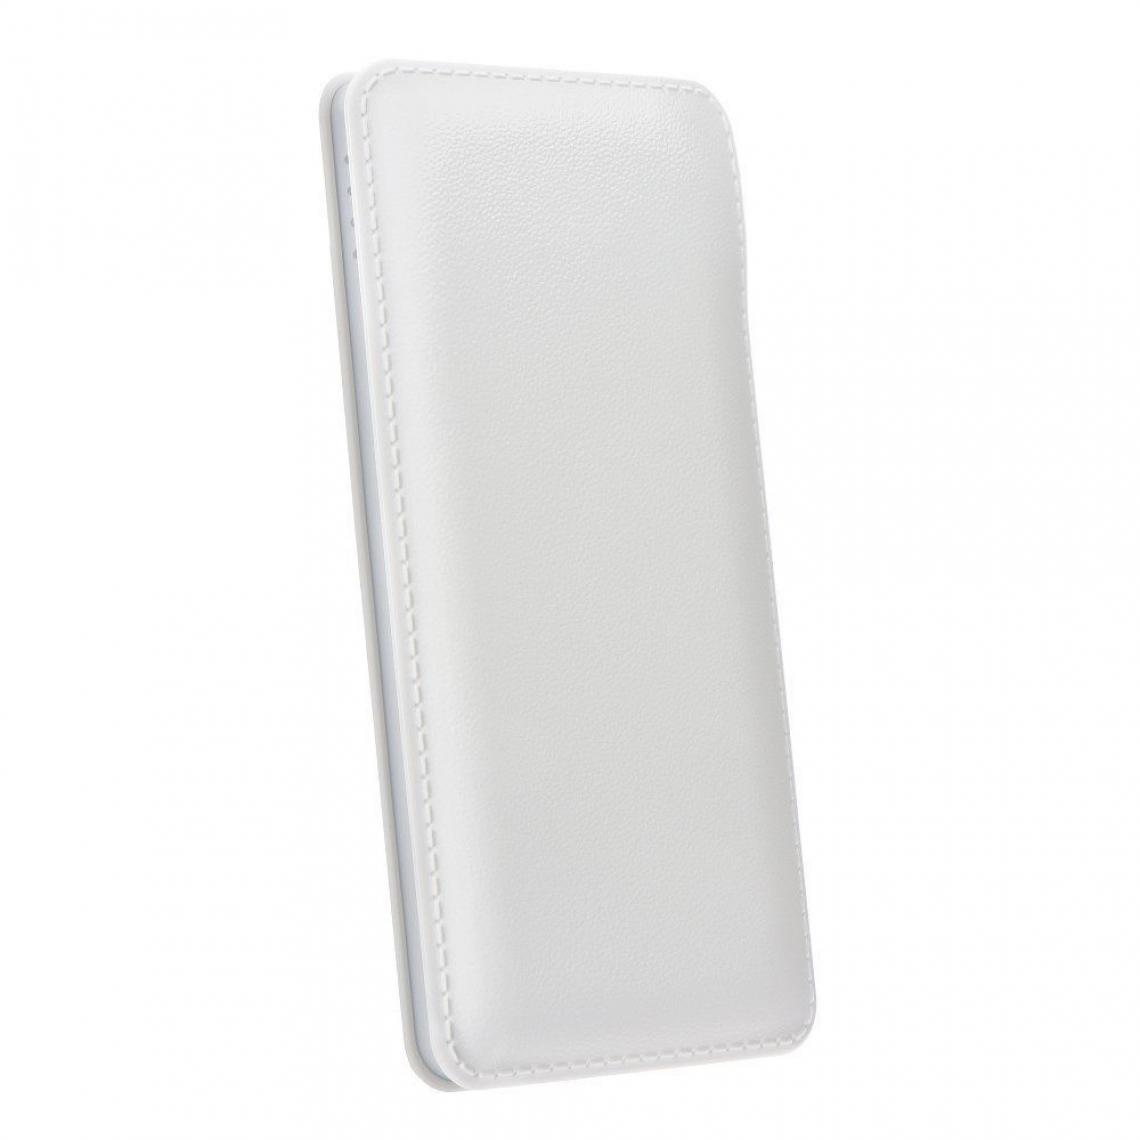 Ozzzo - Chargeur batterie externe 10000mAh powerbank ozzzo blanc pour Realme V15 - Autres accessoires smartphone